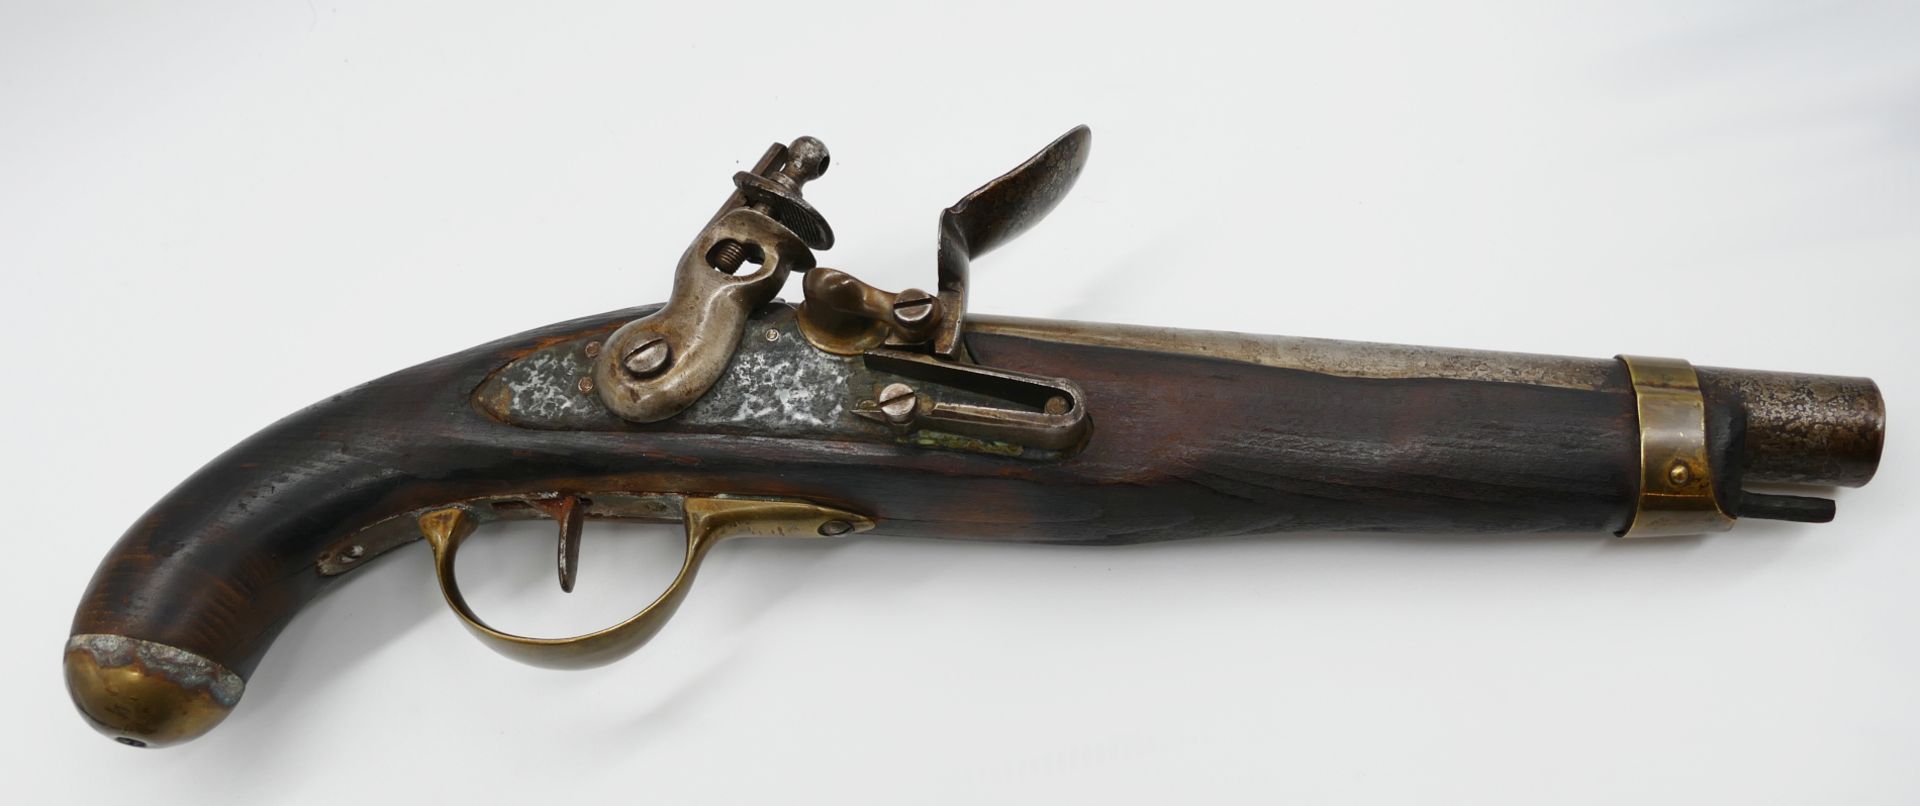 1 Steinschlosspistole wohl 19. Jh. Holz mit Messing-/Metallappliken, ca. L 43cm, z.T. besch. (Rost,